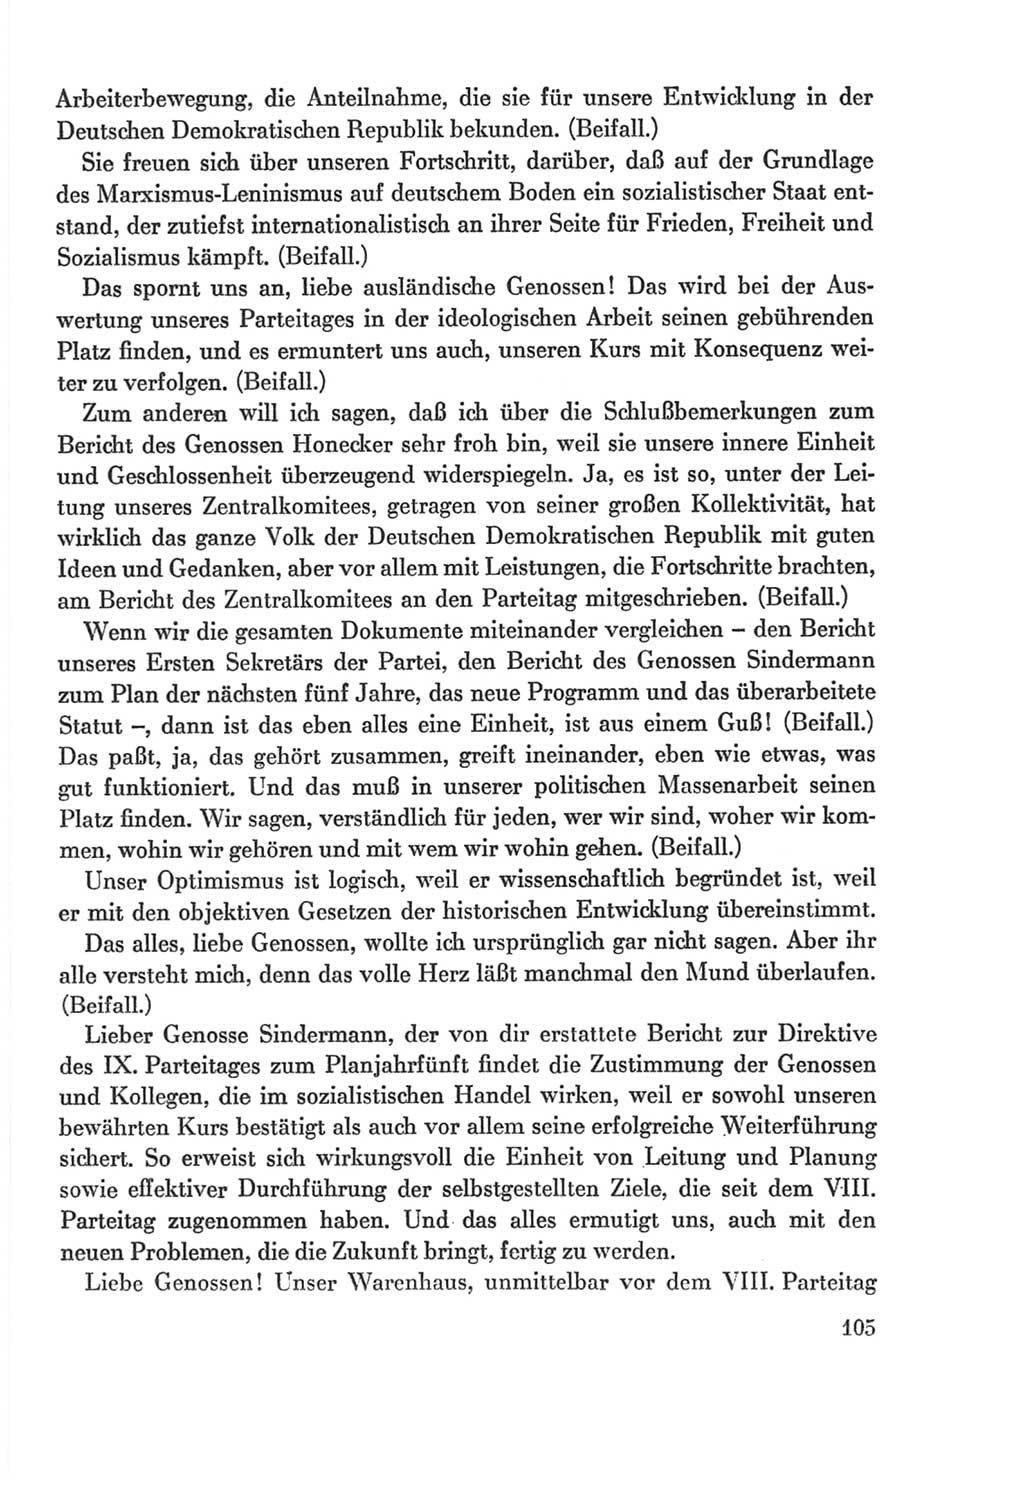 Protokoll der Verhandlungen des Ⅸ. Parteitages der Sozialistischen Einheitspartei Deutschlands (SED) [Deutsche Demokratische Republik (DDR)] 1976, Band 2, Seite 105 (Prot. Verh. Ⅸ. PT SED DDR 1976, Bd. 2, S. 105)